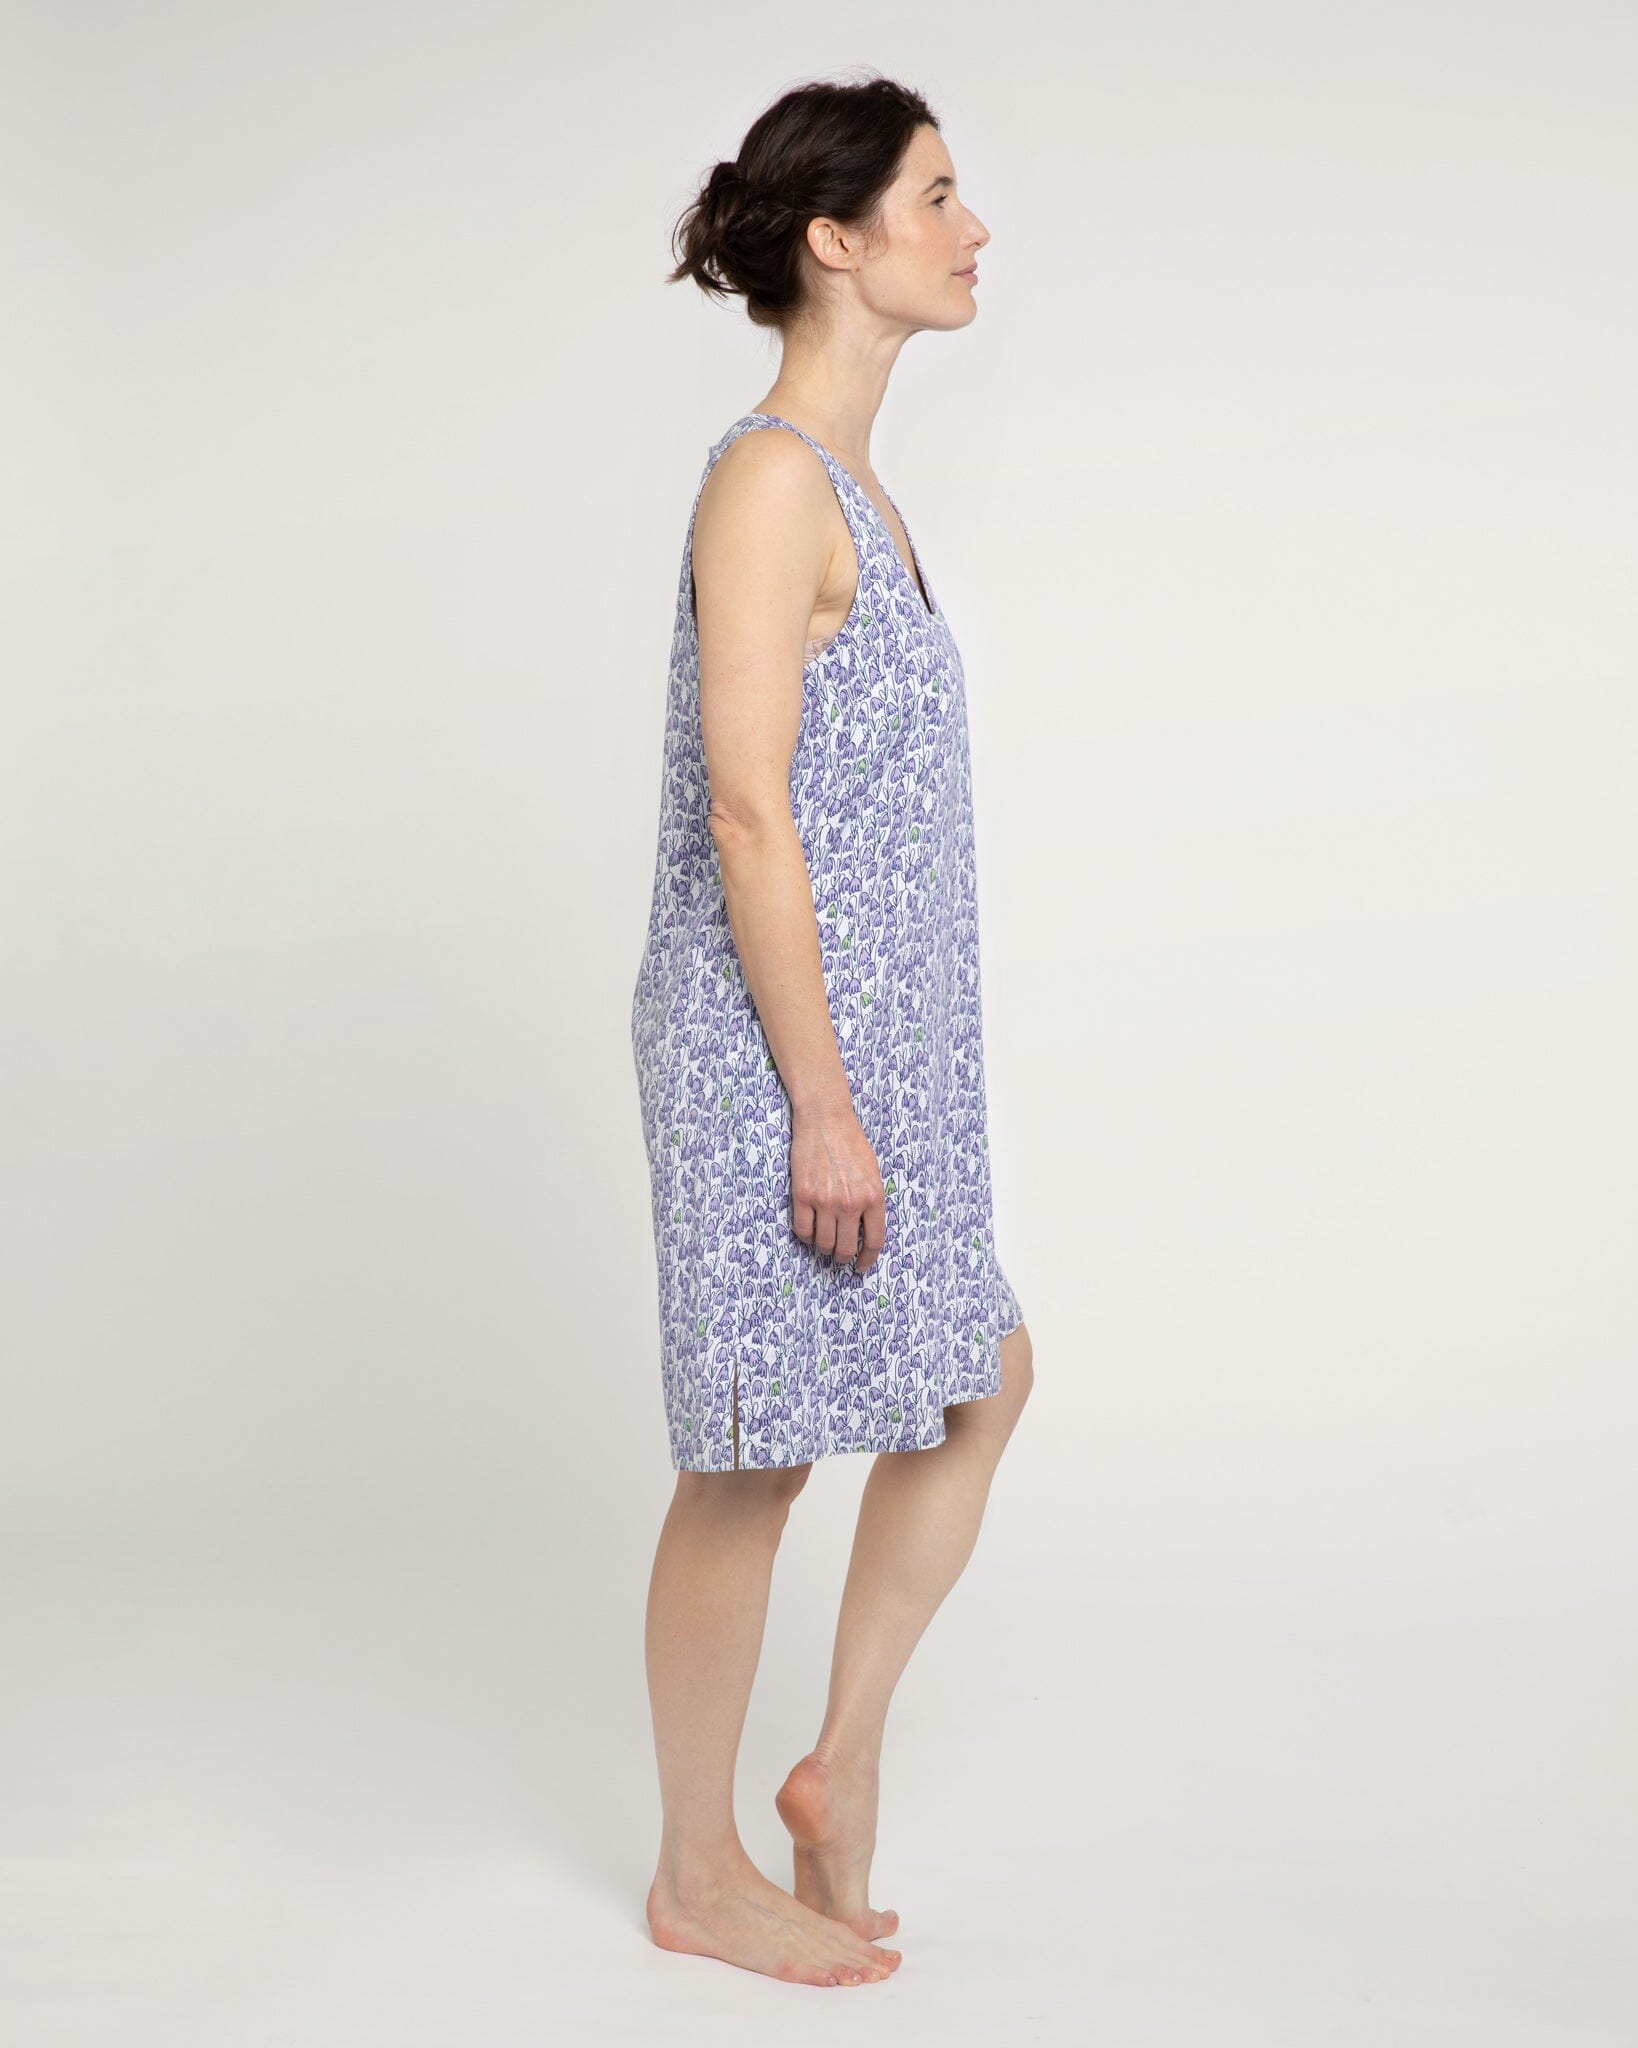 Pixie print organic cotton nightdress, lilac Nightdress Yawn 